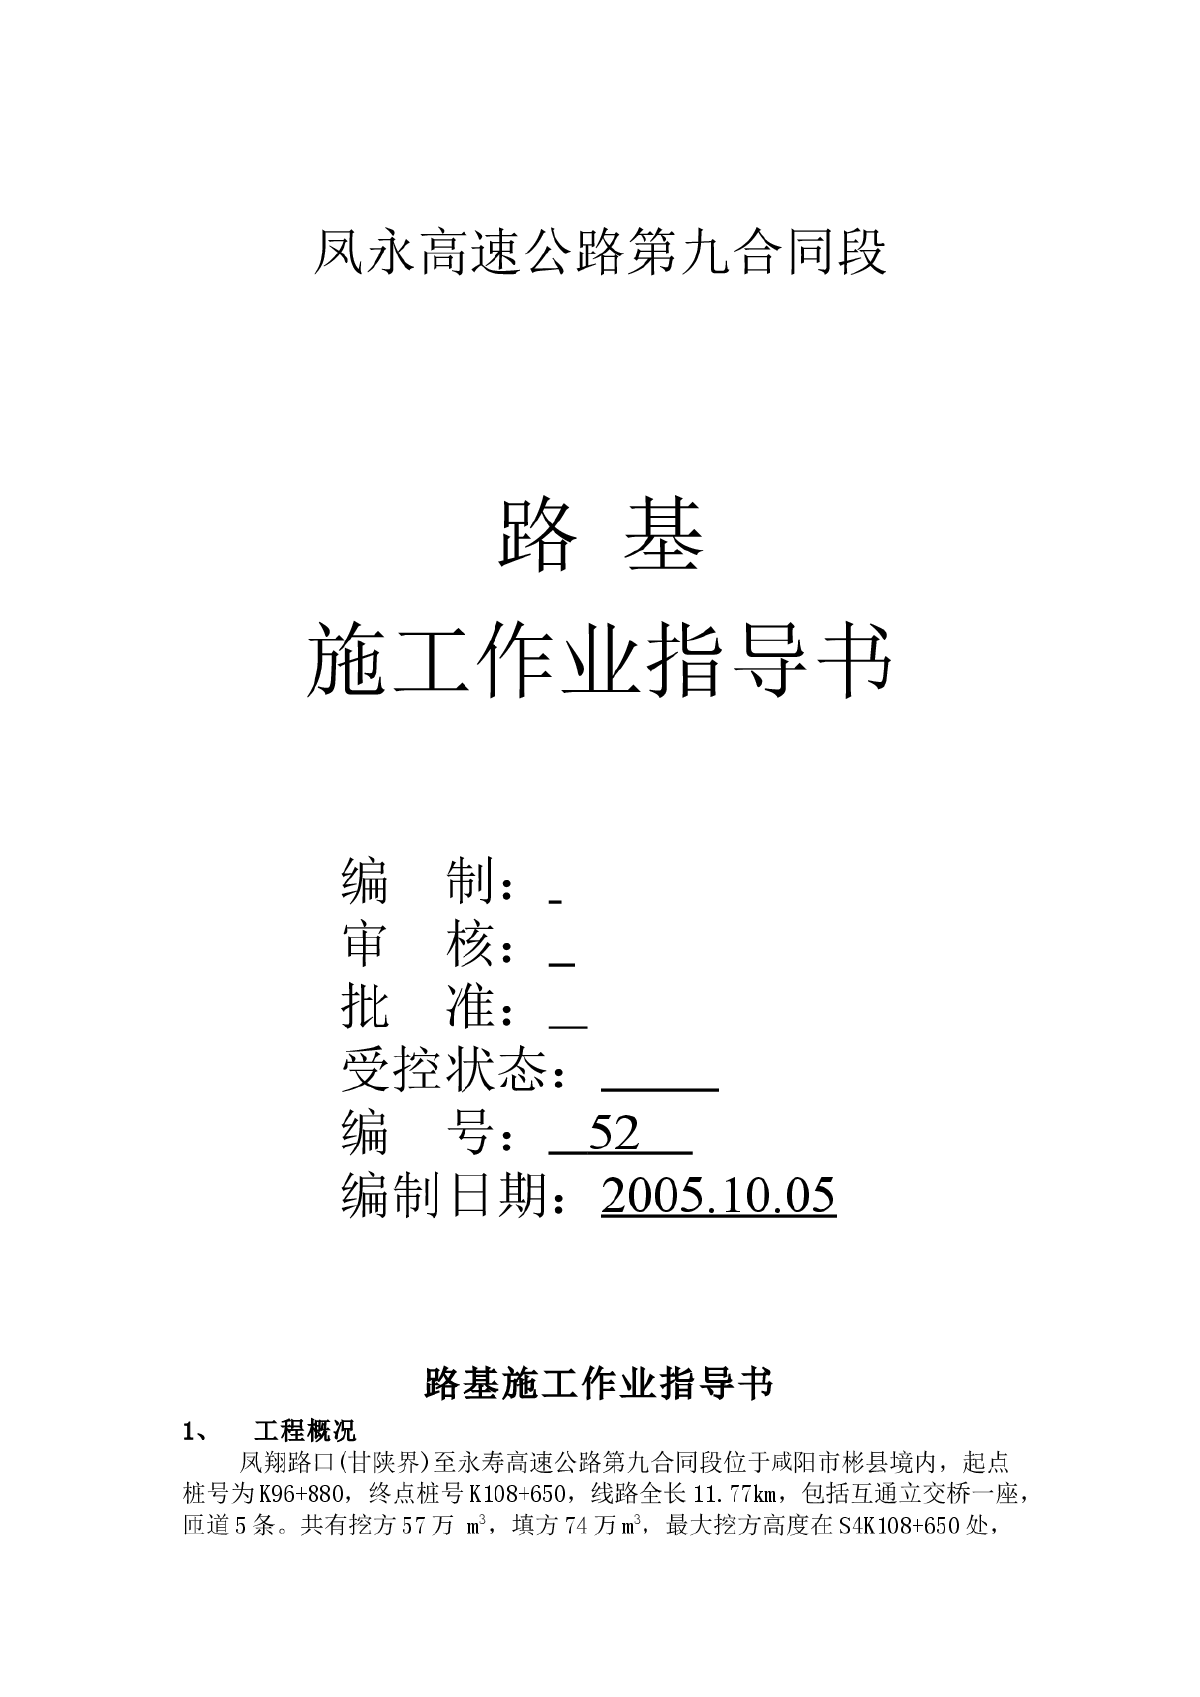 凤永高速路基施工作业指导书